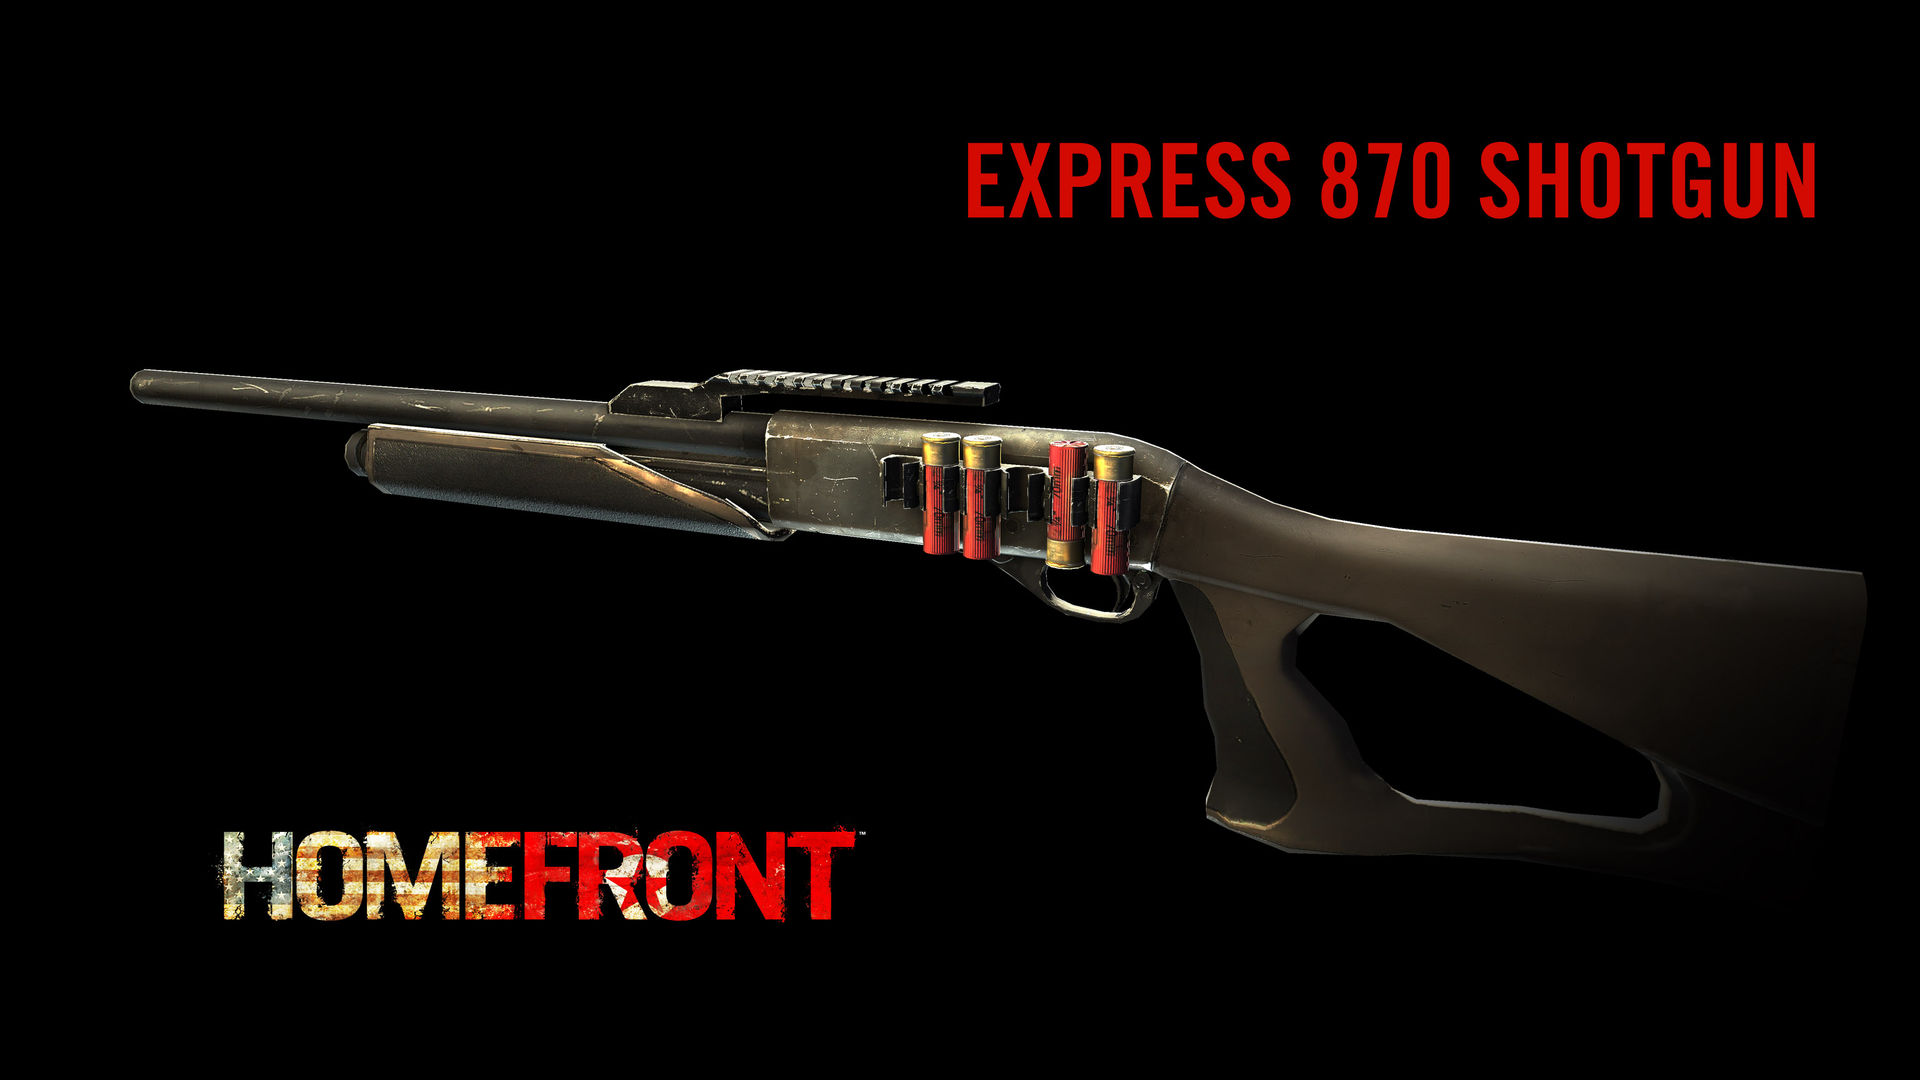 Homefront: Express 870 Shotgun Featured Screenshot #1